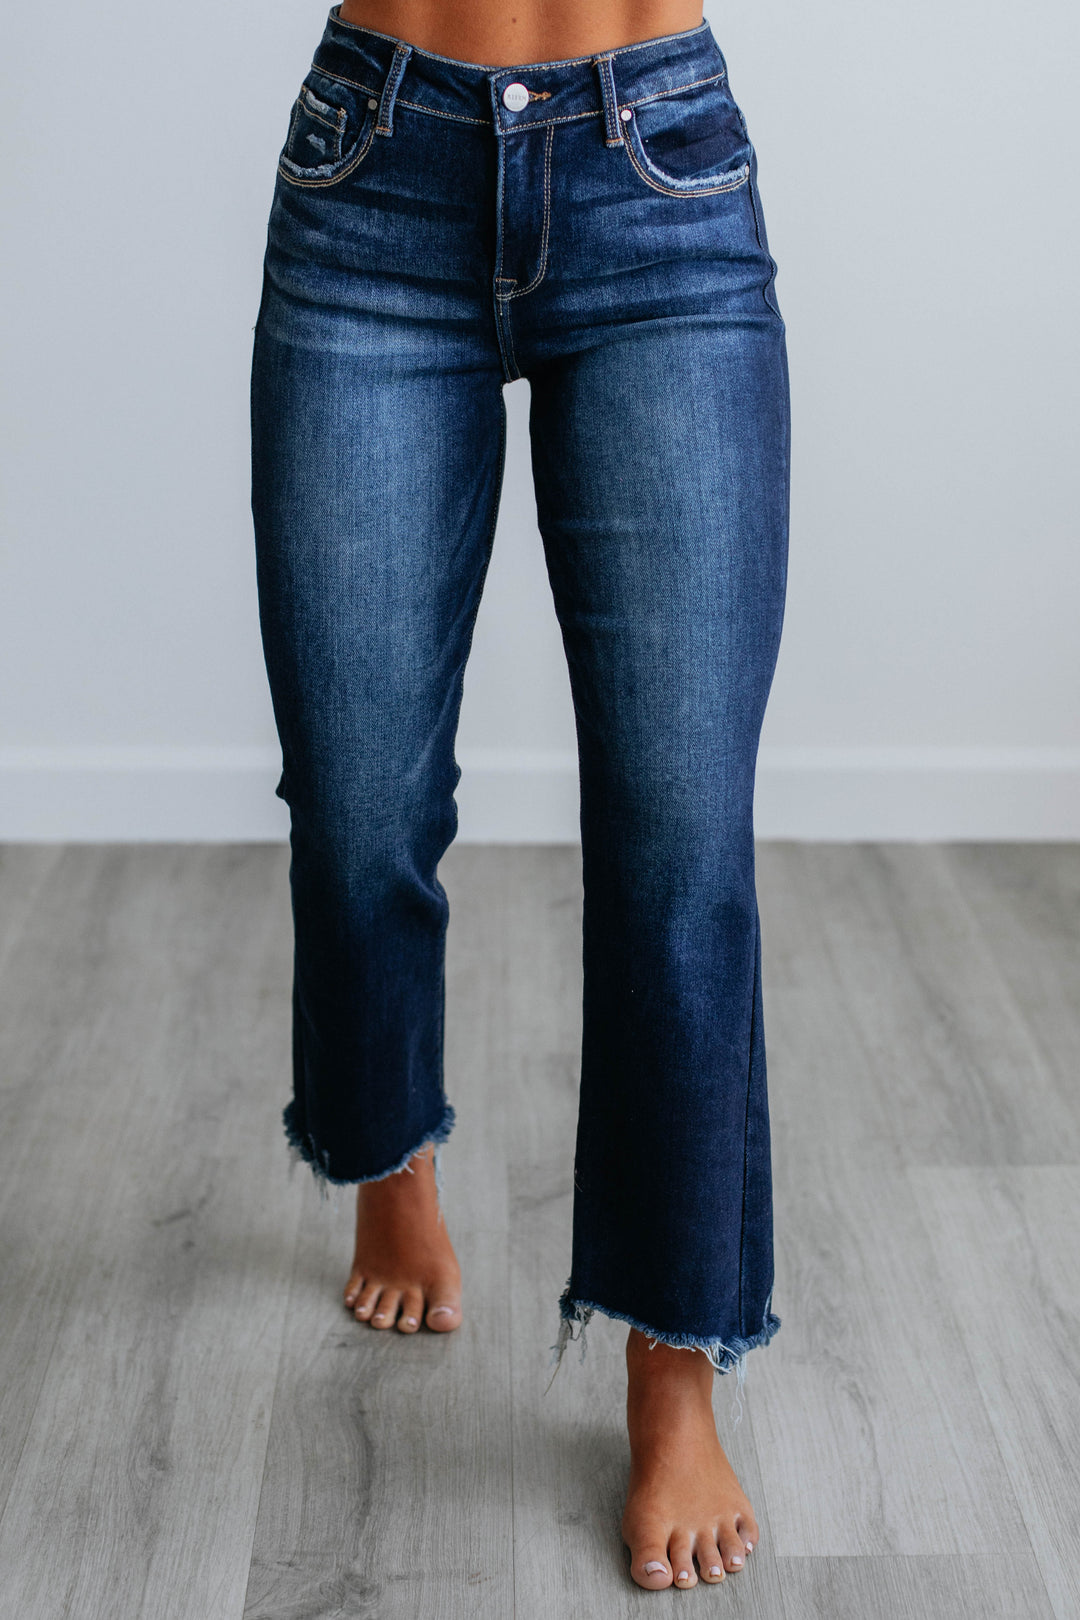 The Kennedy Dark Wash Tummy Control High Rise Straight Leg Jeans by RFM